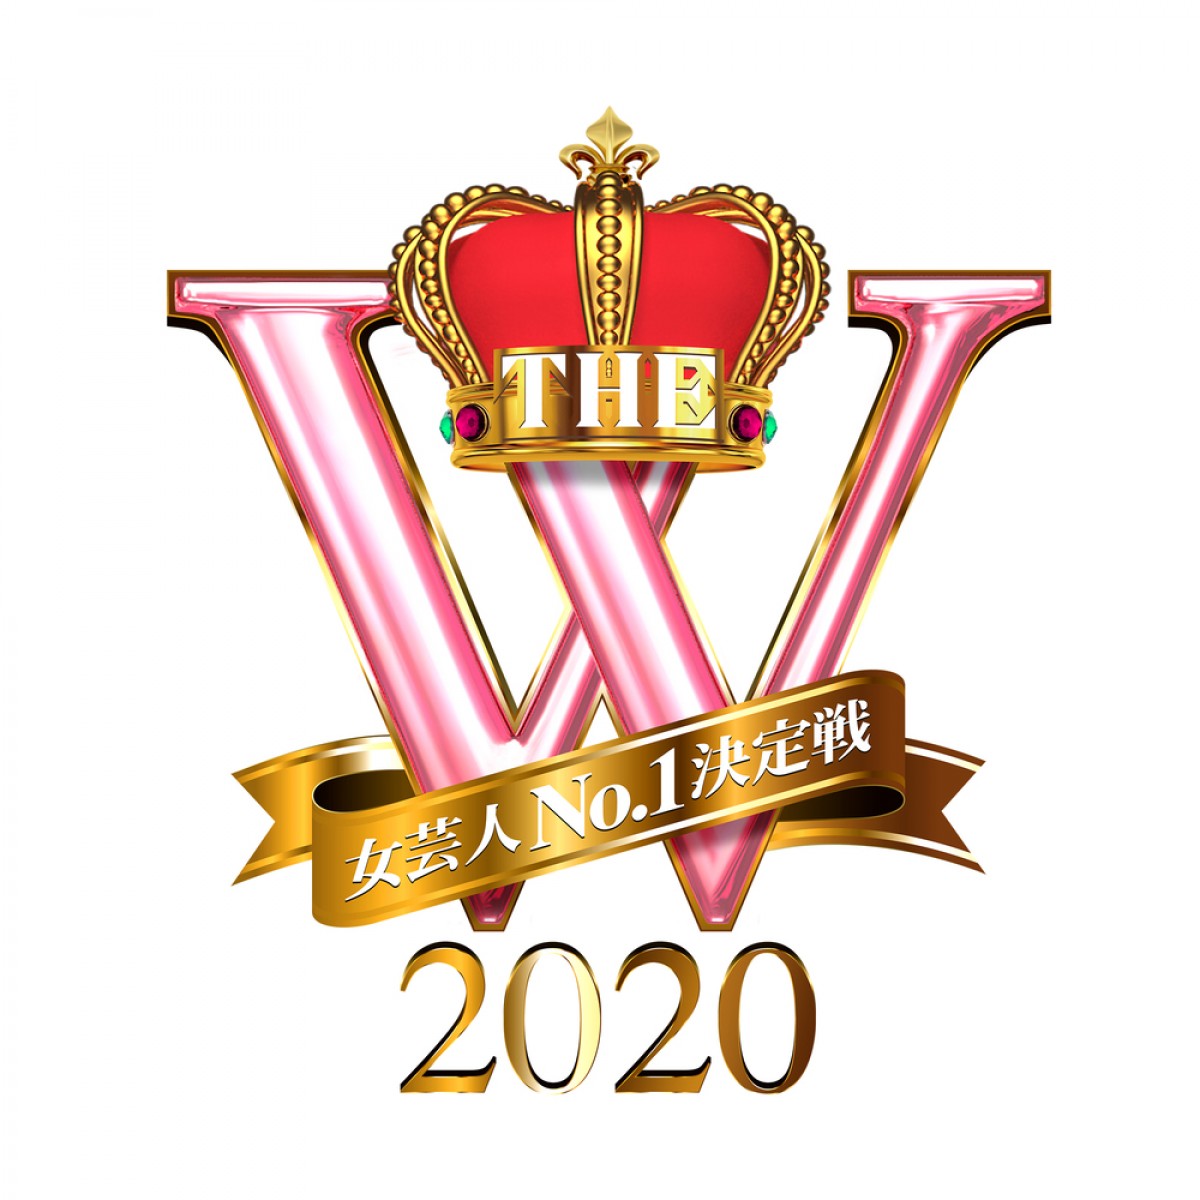 『女芸人No.1決定戦 THE W 2020』ロゴビジュアル